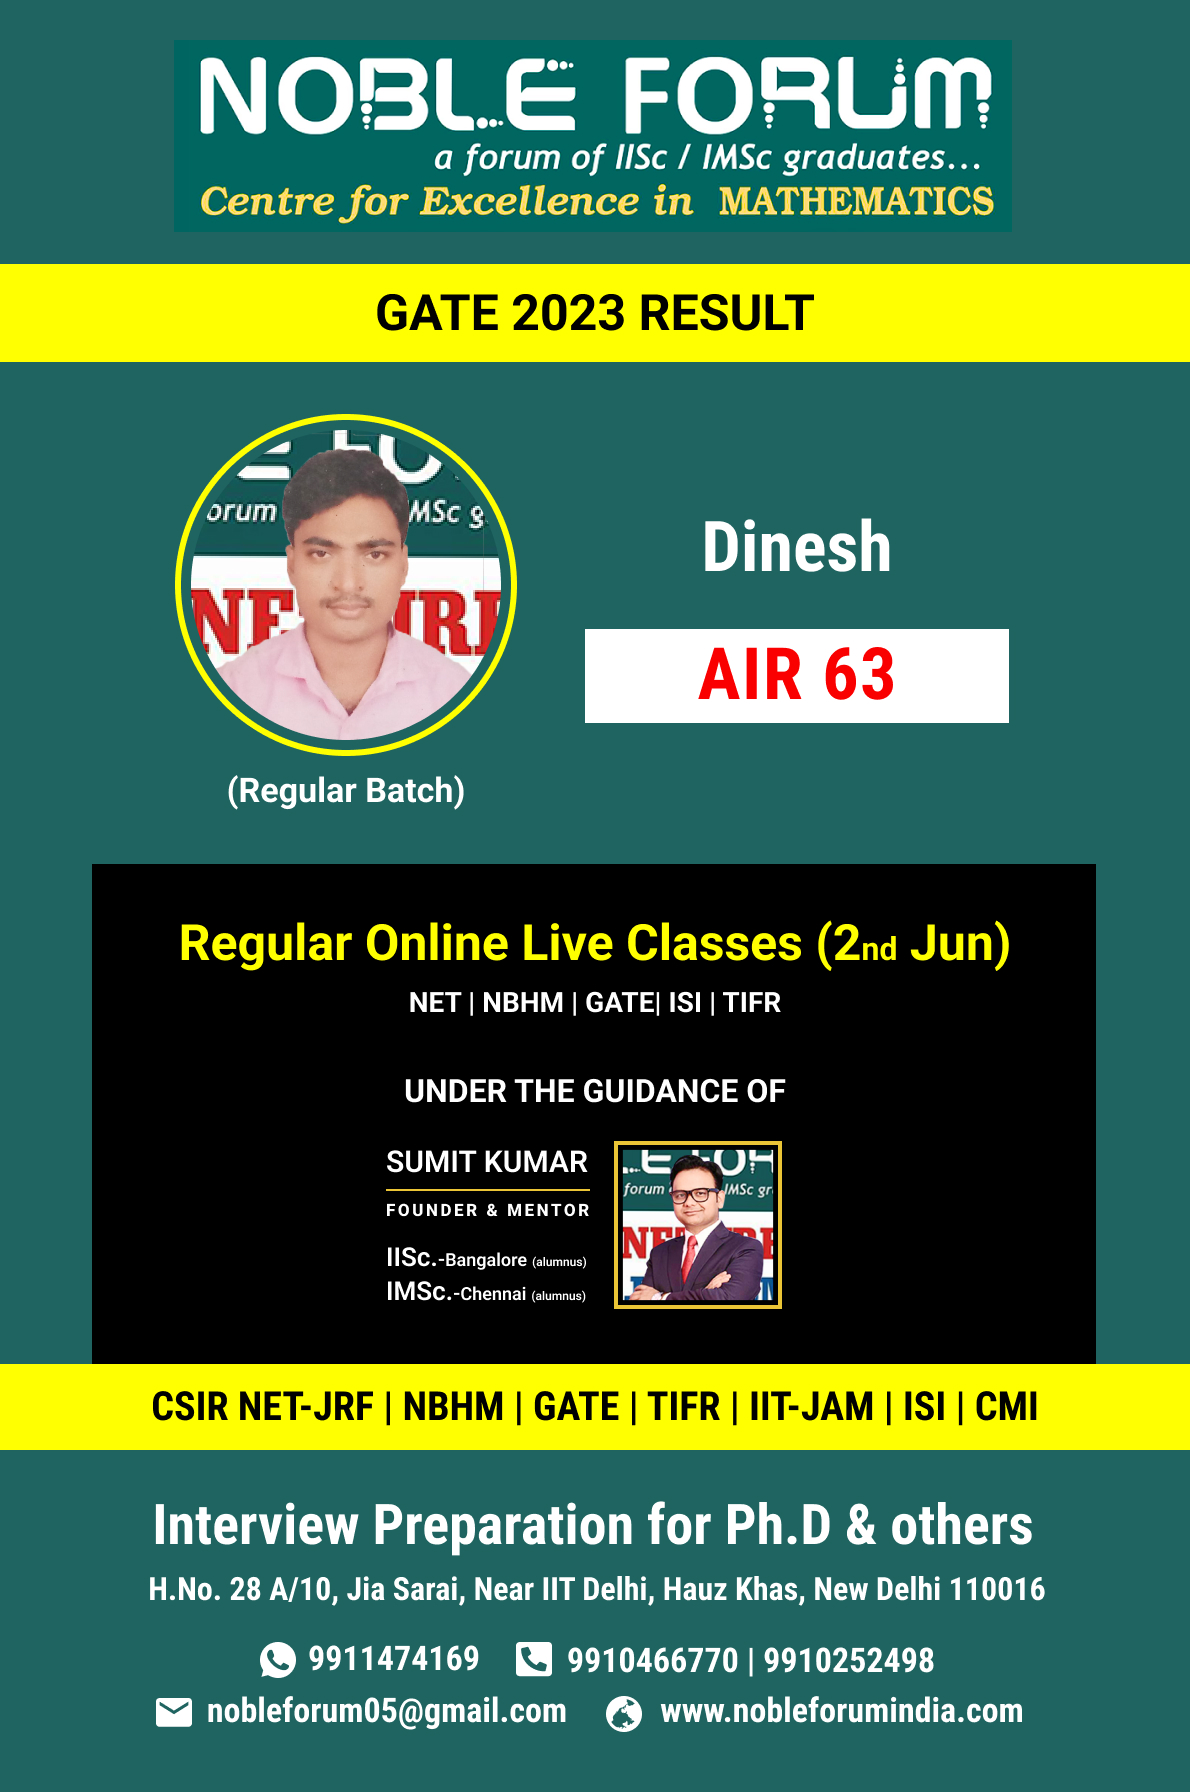 Dinesh-GATE 2023 RESULT